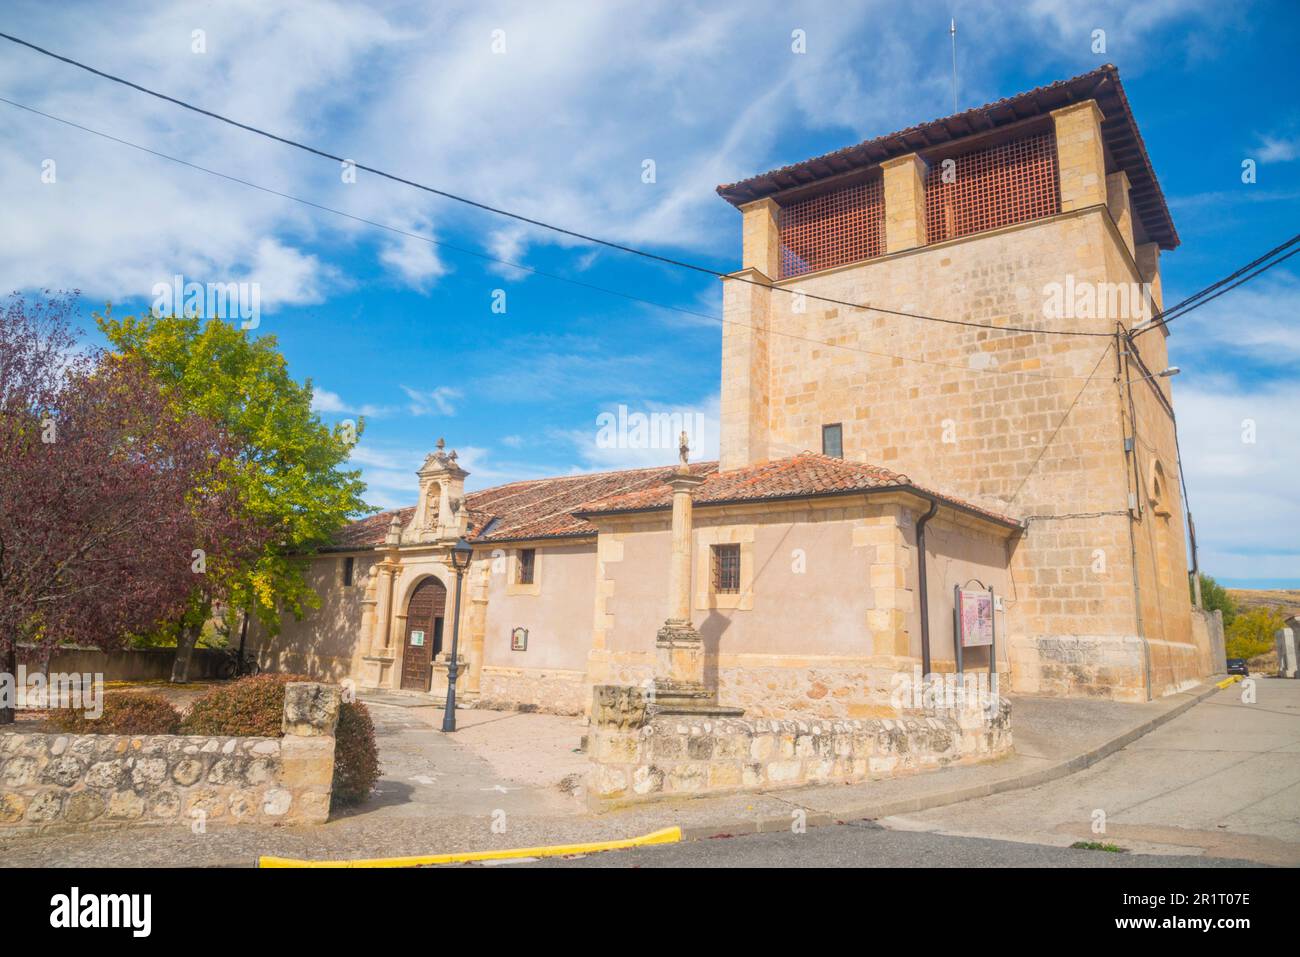 Facade of San Miguel church. San Miguel de Bernuy, Segovia province, Castilla Leon, Spain. Stock Photo